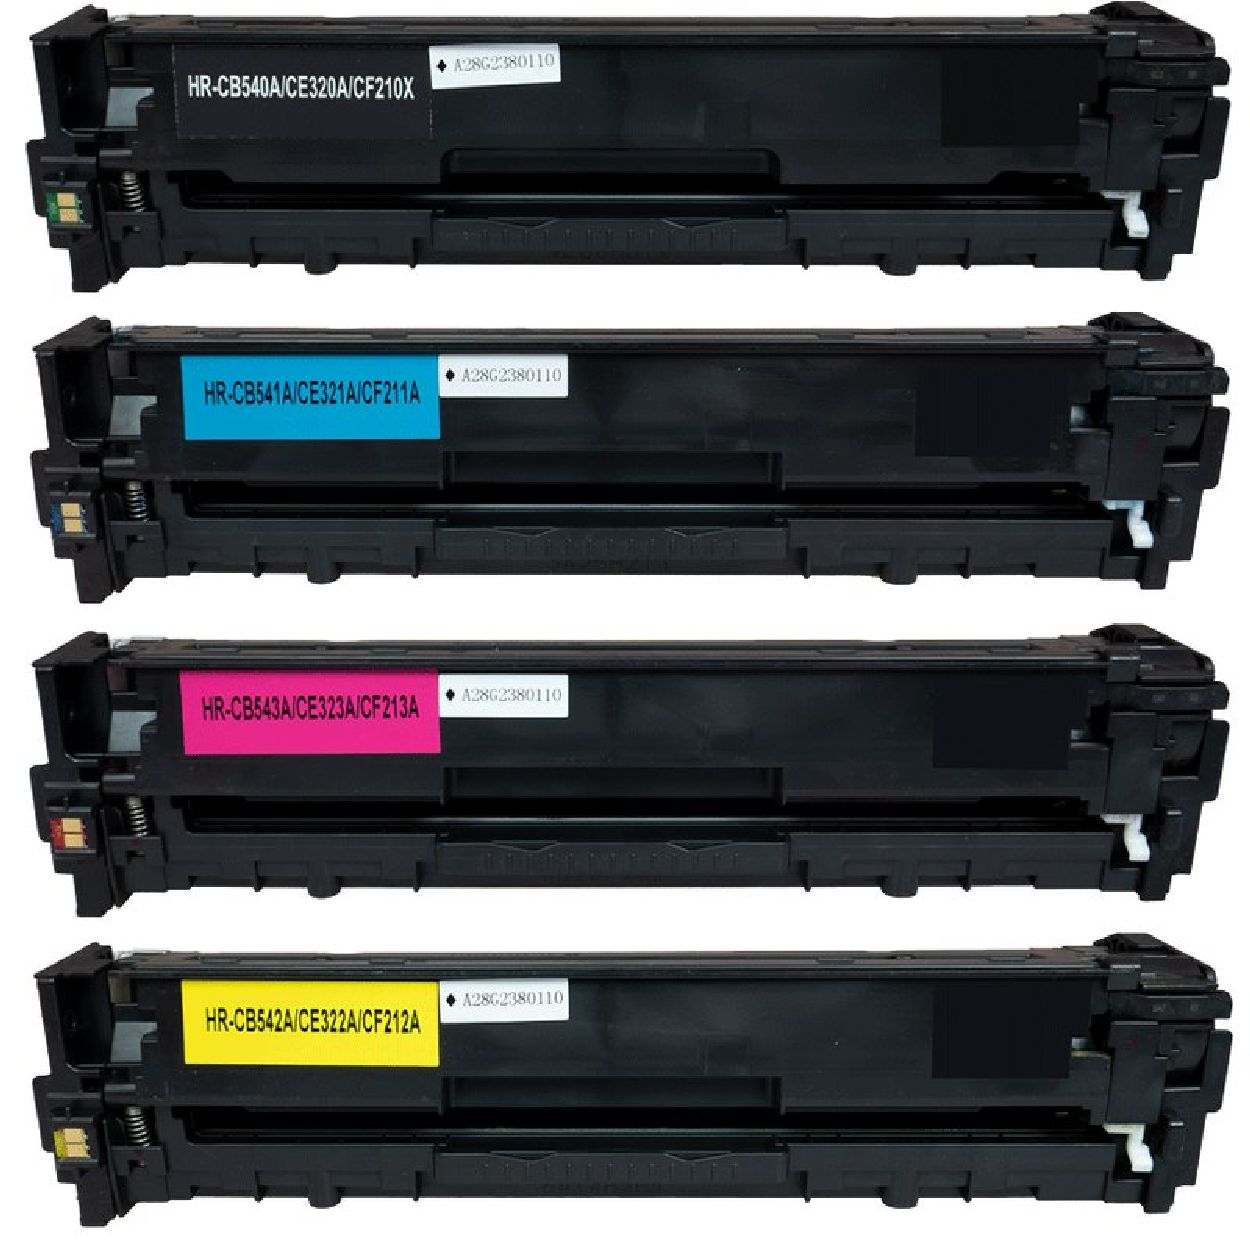 INBUSCO / KUBIS Toner für CF210A-CF213A-8 (TonerHPCF210A-CF213A-8) Mehrfarbig HP Toner